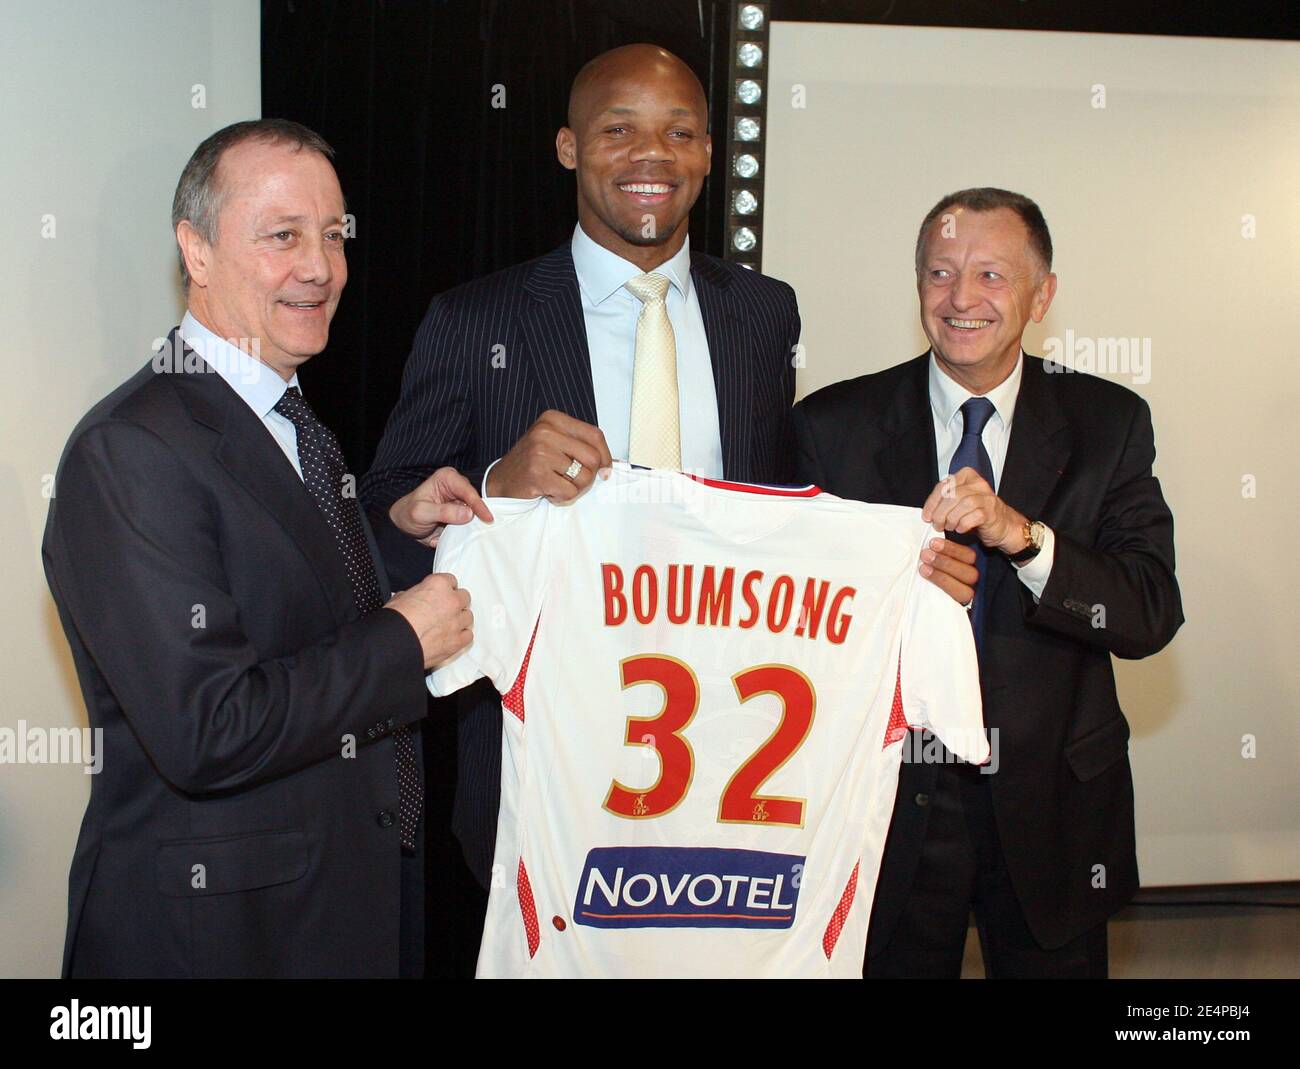 Jean-Alain Boumsong, de Juventus, est vu lors d'une conférence de presse  pour marquer son transfert à l'équipe de football Olympique Lyon à Lyon,  France, le 29 janvier 2008. On y voit l'assistant